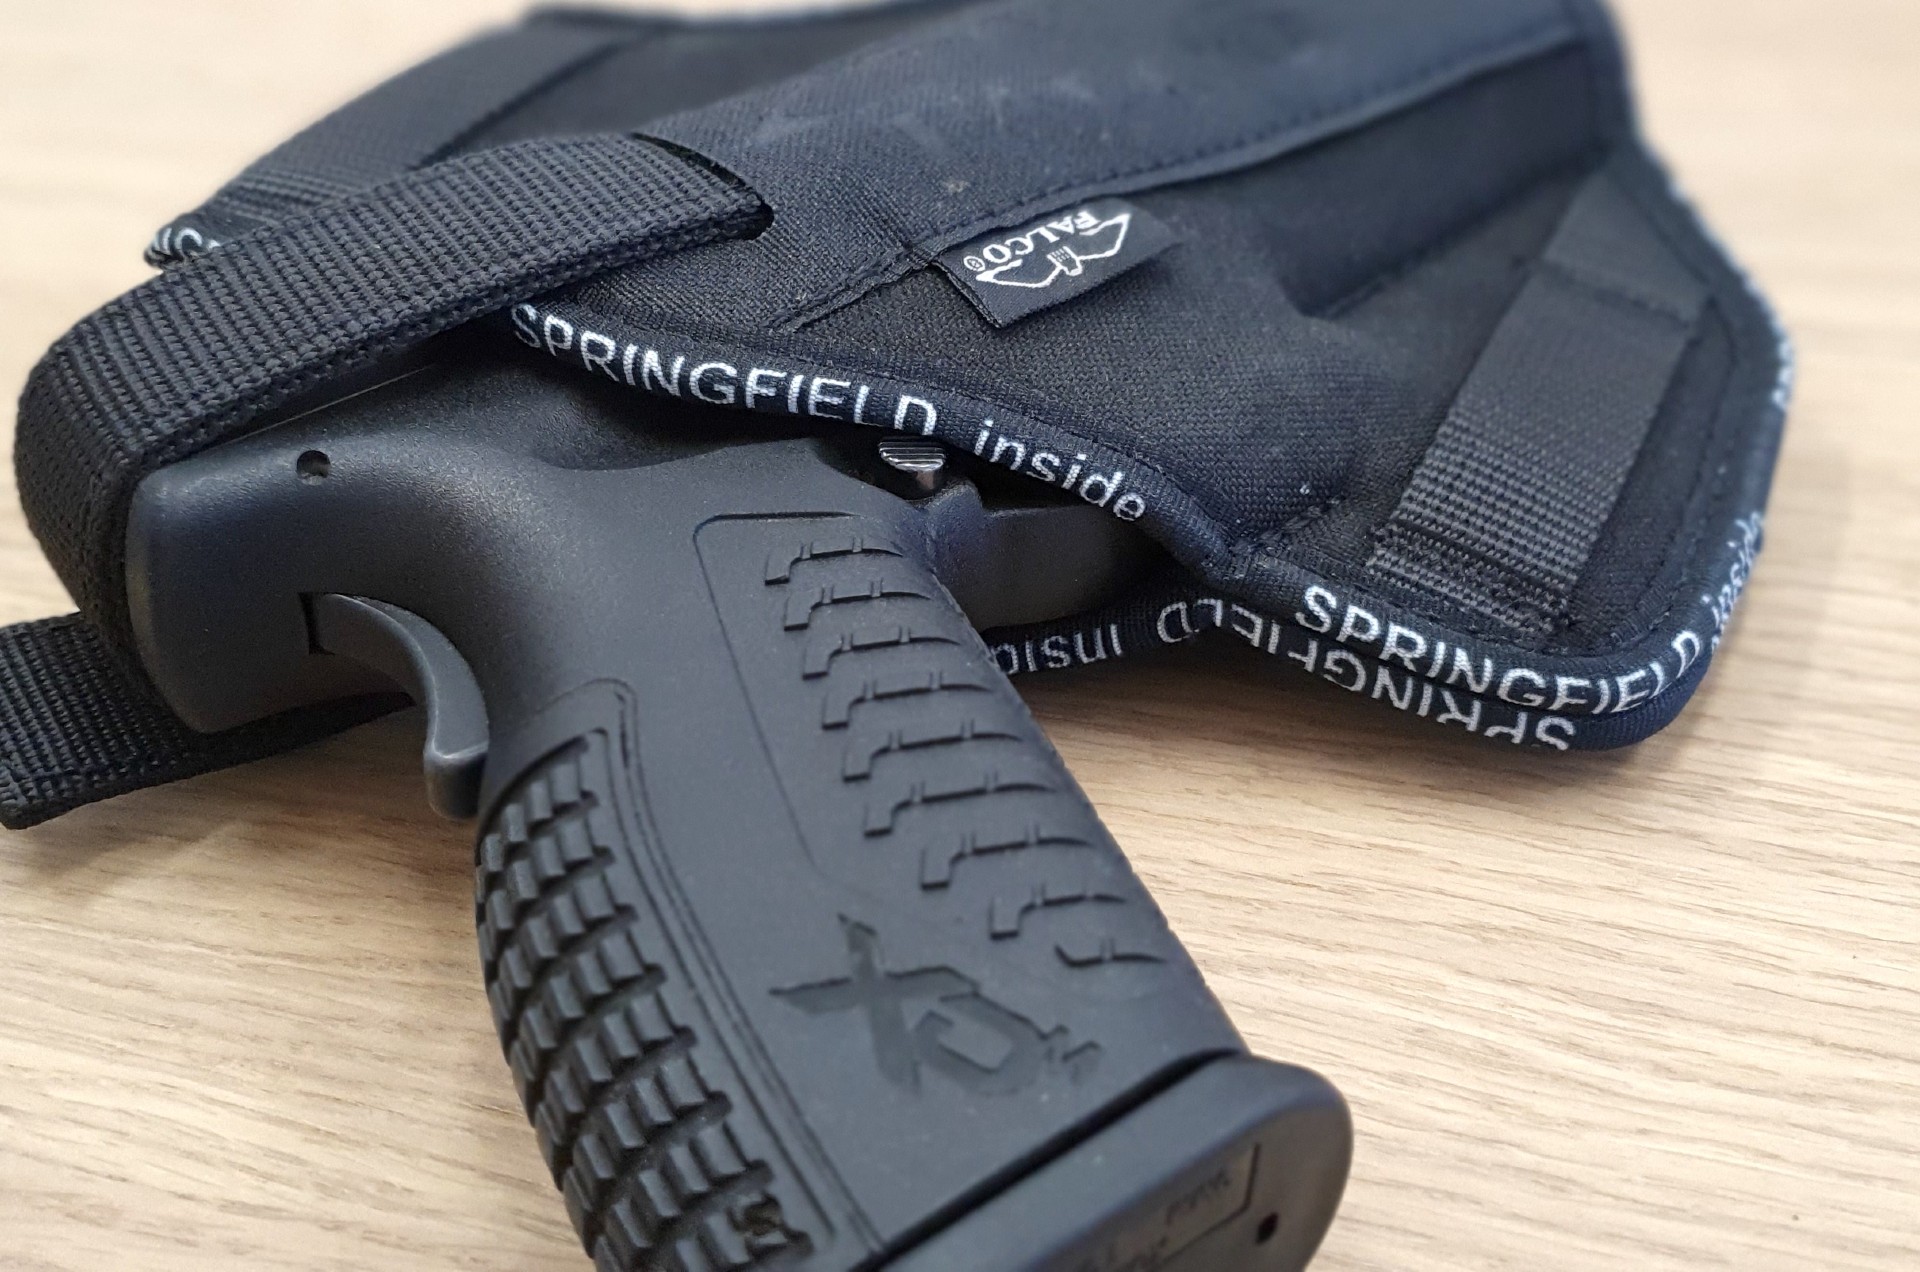 Nylon IWB concealment gun holser for Glock 23 